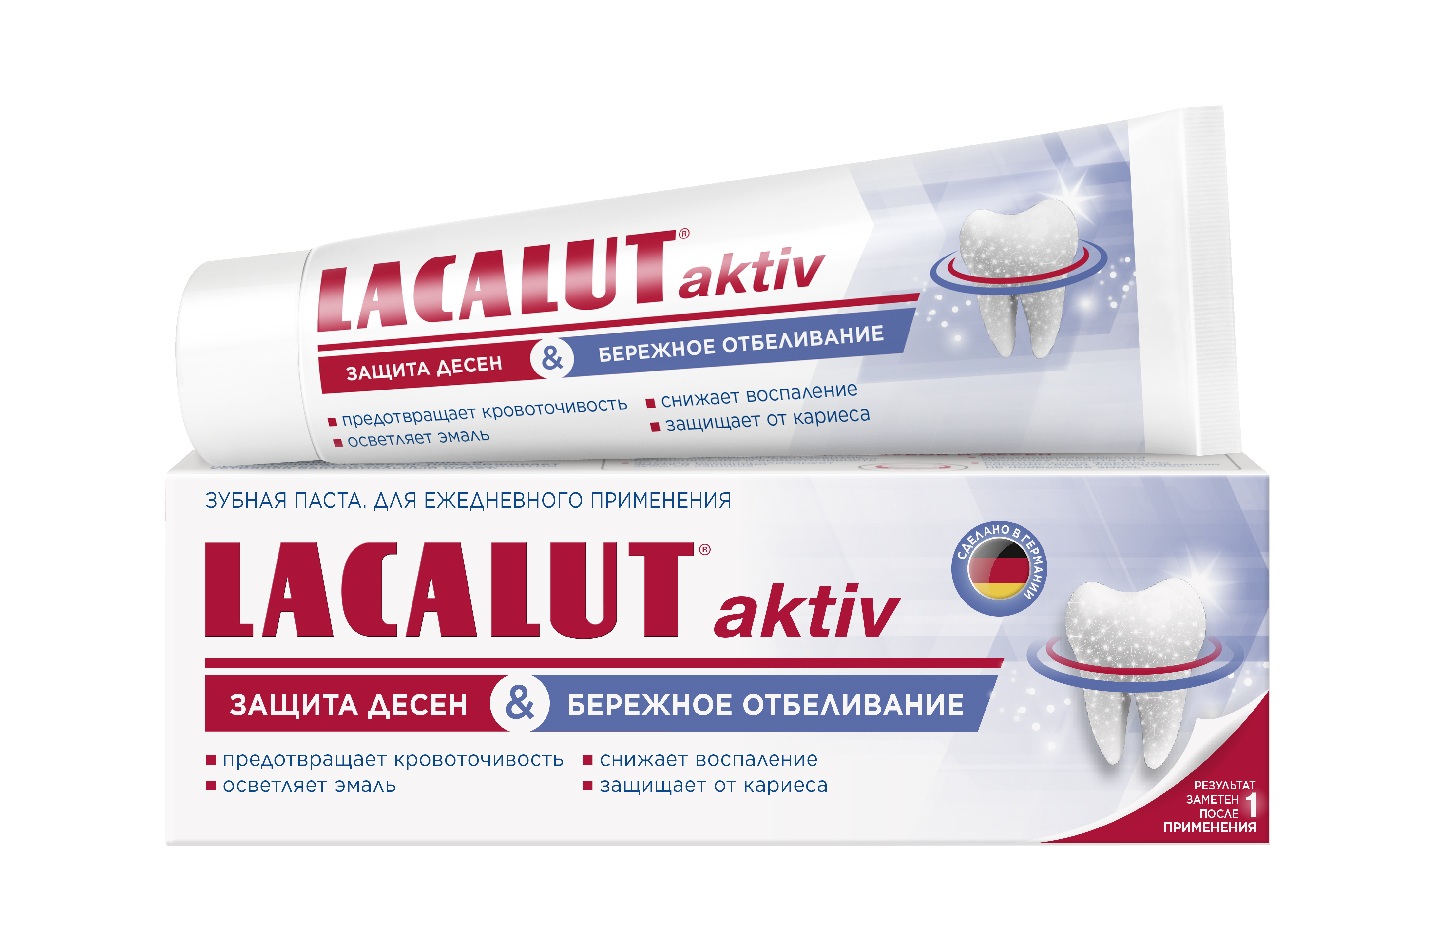 Купить Лакалют паста зубная Актив защита десен и бережное отбеливание 65г, Dr.Theiss Naturwaren GmbH